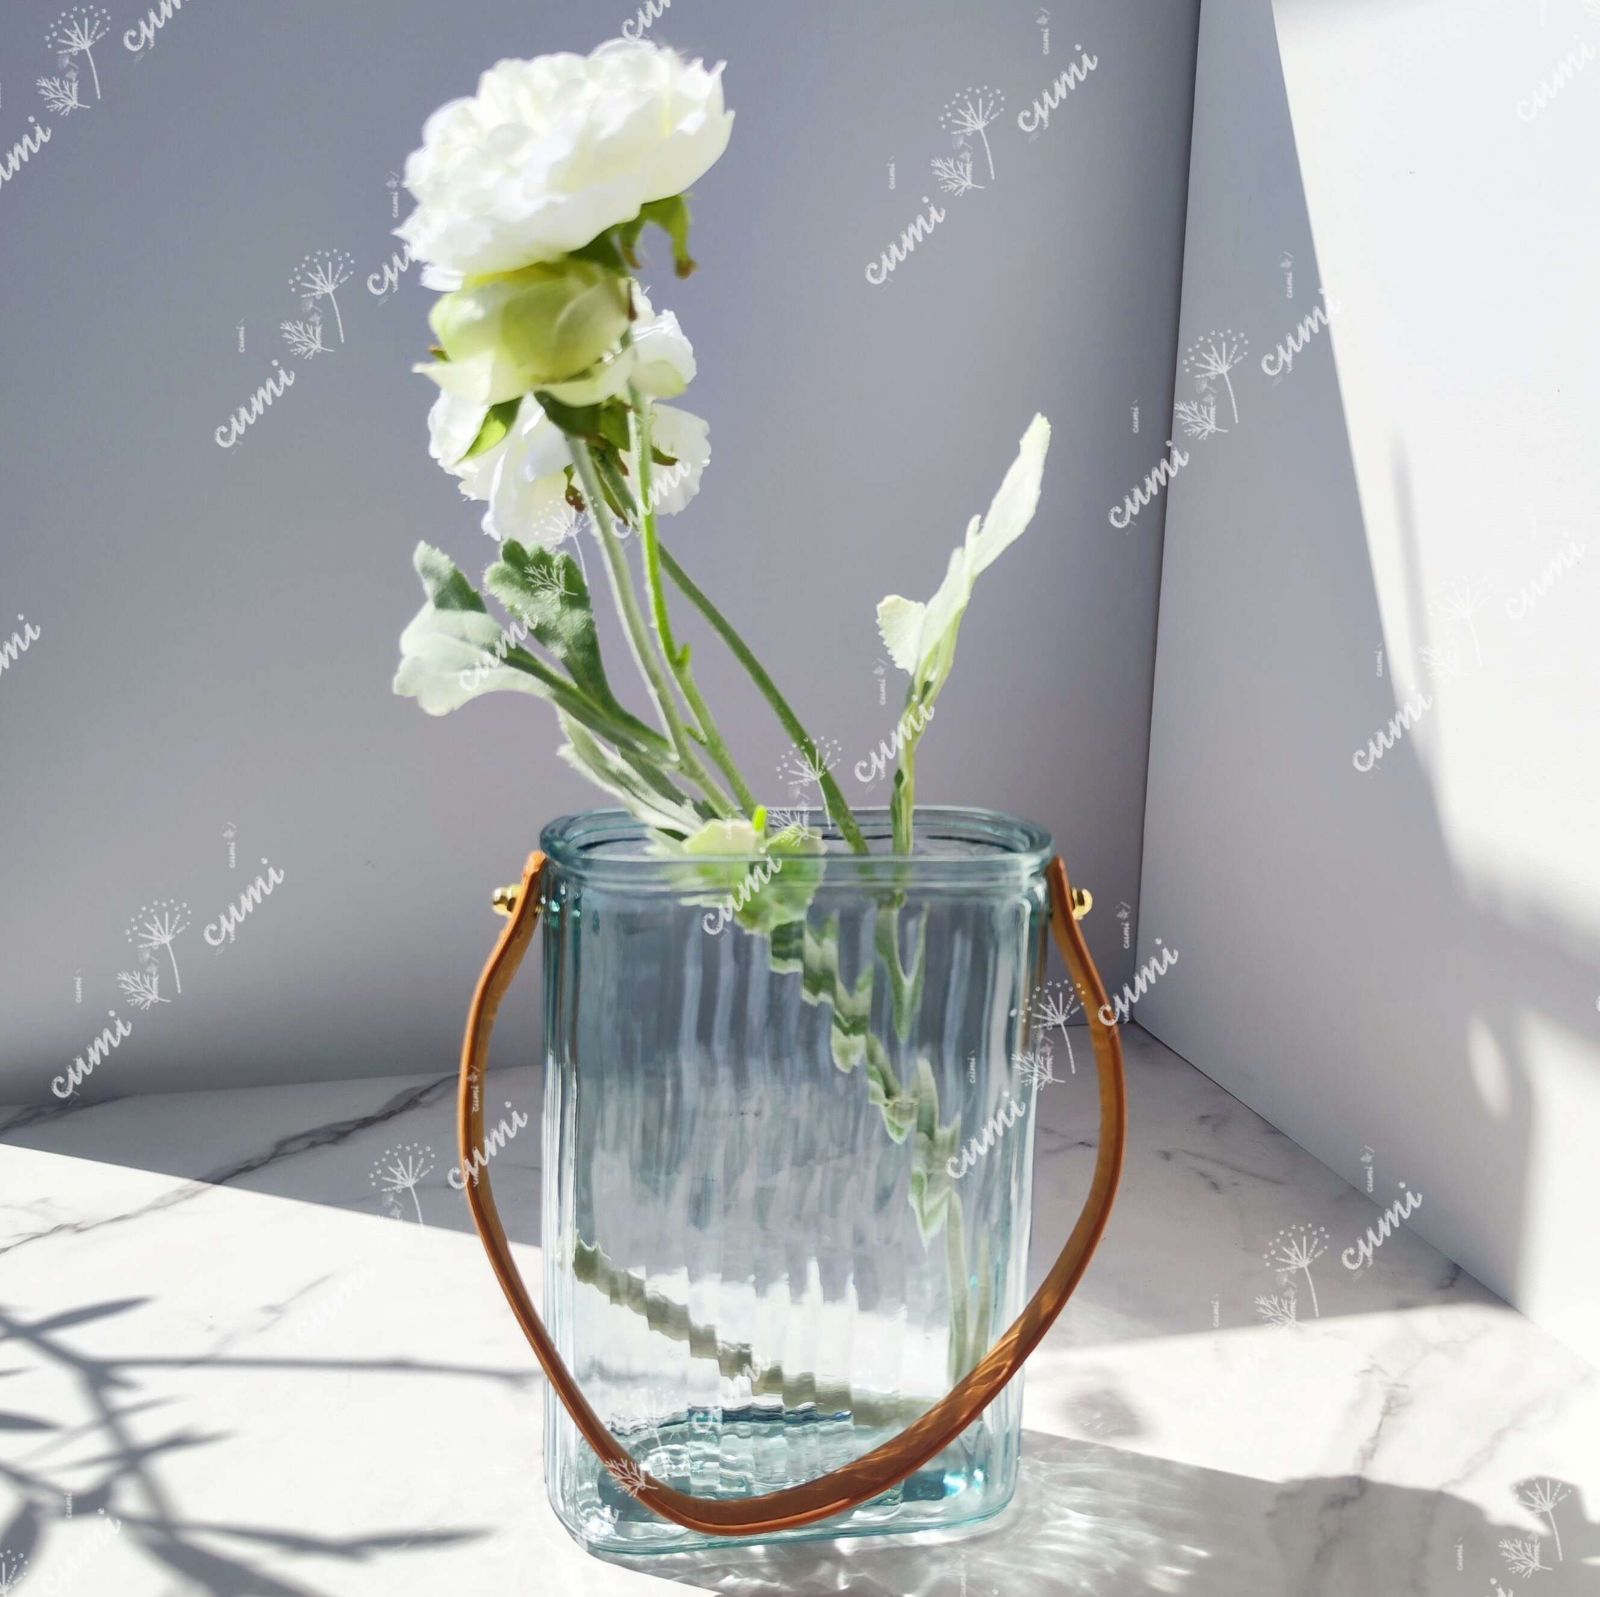 水色 ハンドル付き 一輪挿し ガラス 花瓶 フラワーベース クリスタル インテリア おしゃれ 透明 クリア キラキラ 限定 一輪挿し 高級 おしゃれ  室内 激安 レア プレゼント 海外 おすすめ 人気 デザイン 観葉植物 - メルカリ